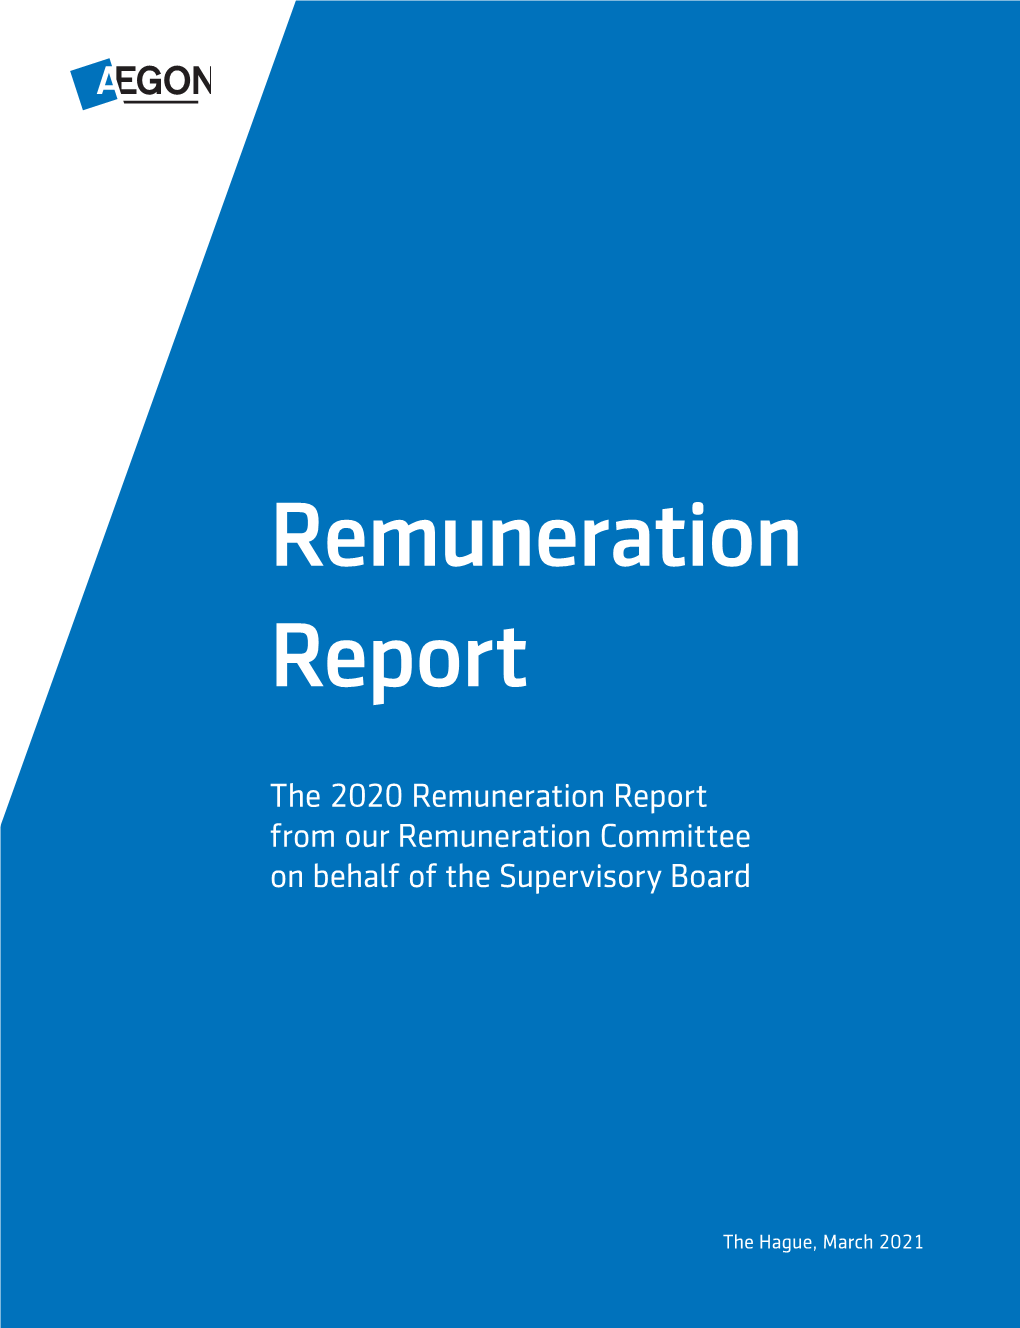 Aegon Remuneration Report 2020